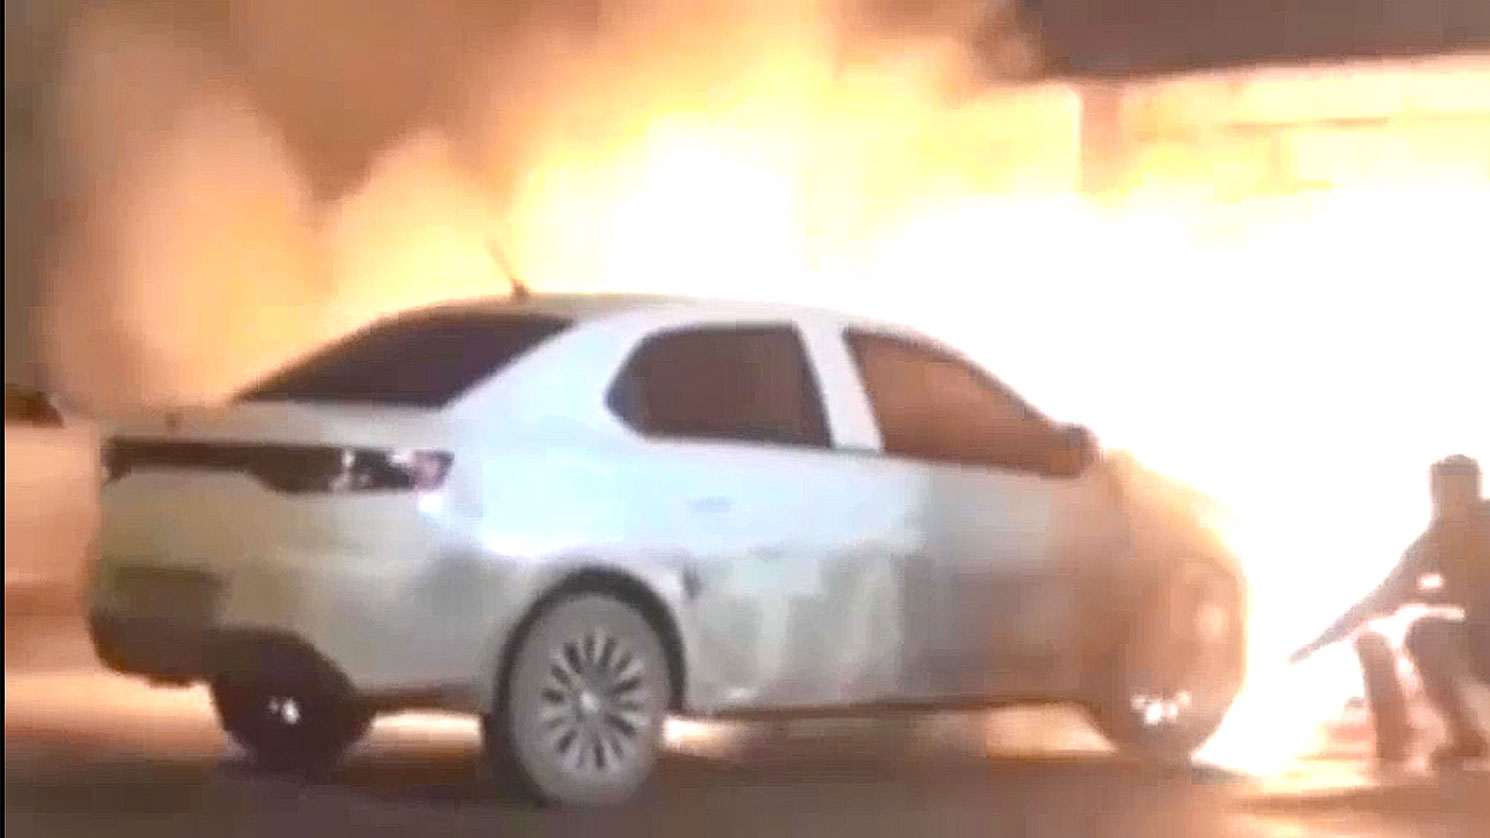 آتش سوزی تارا ایران خودرو